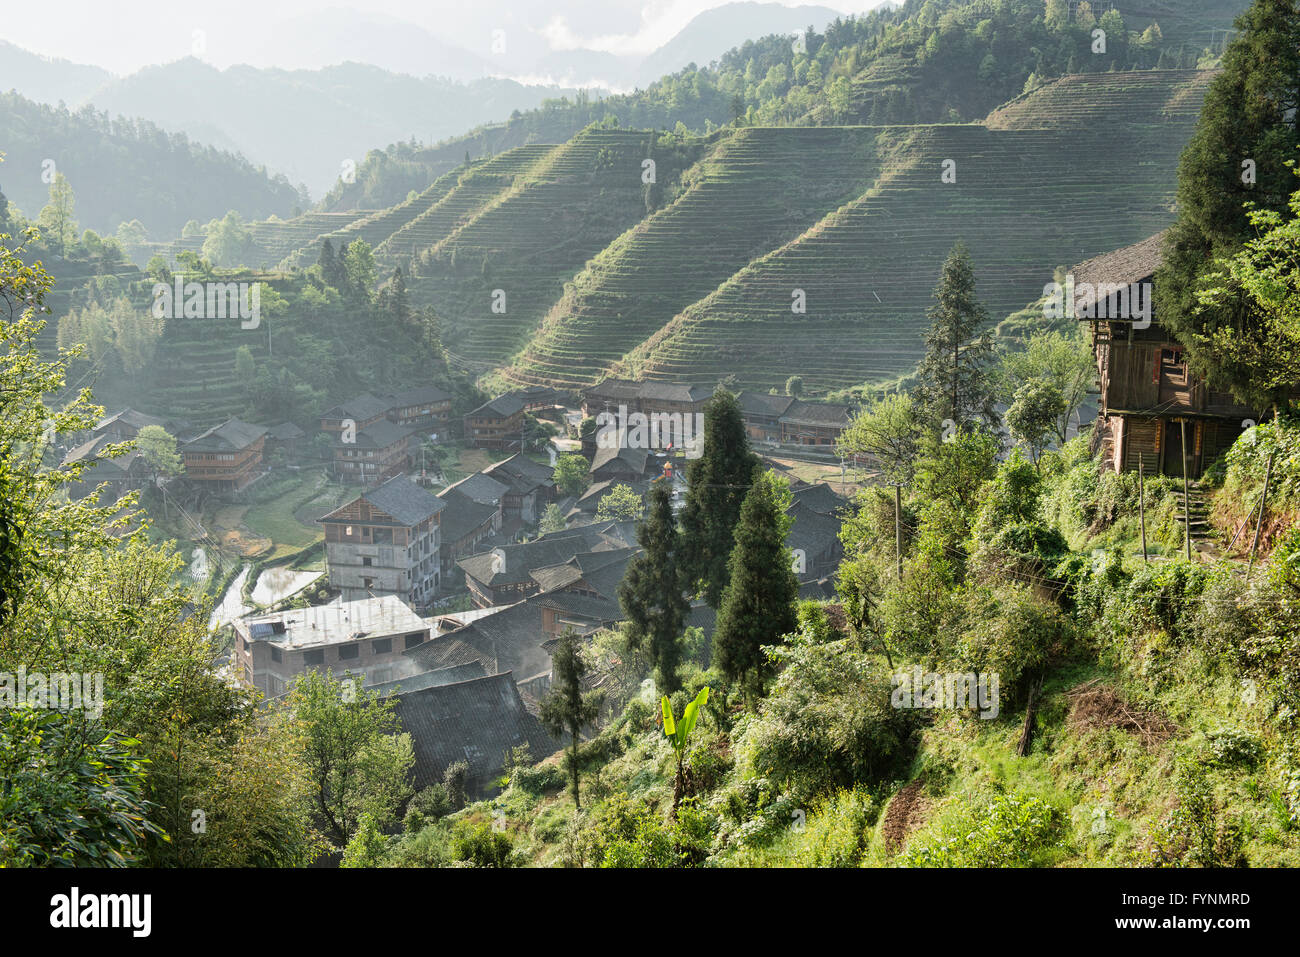 Village de Dazhai et rizières en terrasse dans la lumière du matin, région autonome du Guangxi, Chine Banque D'Images